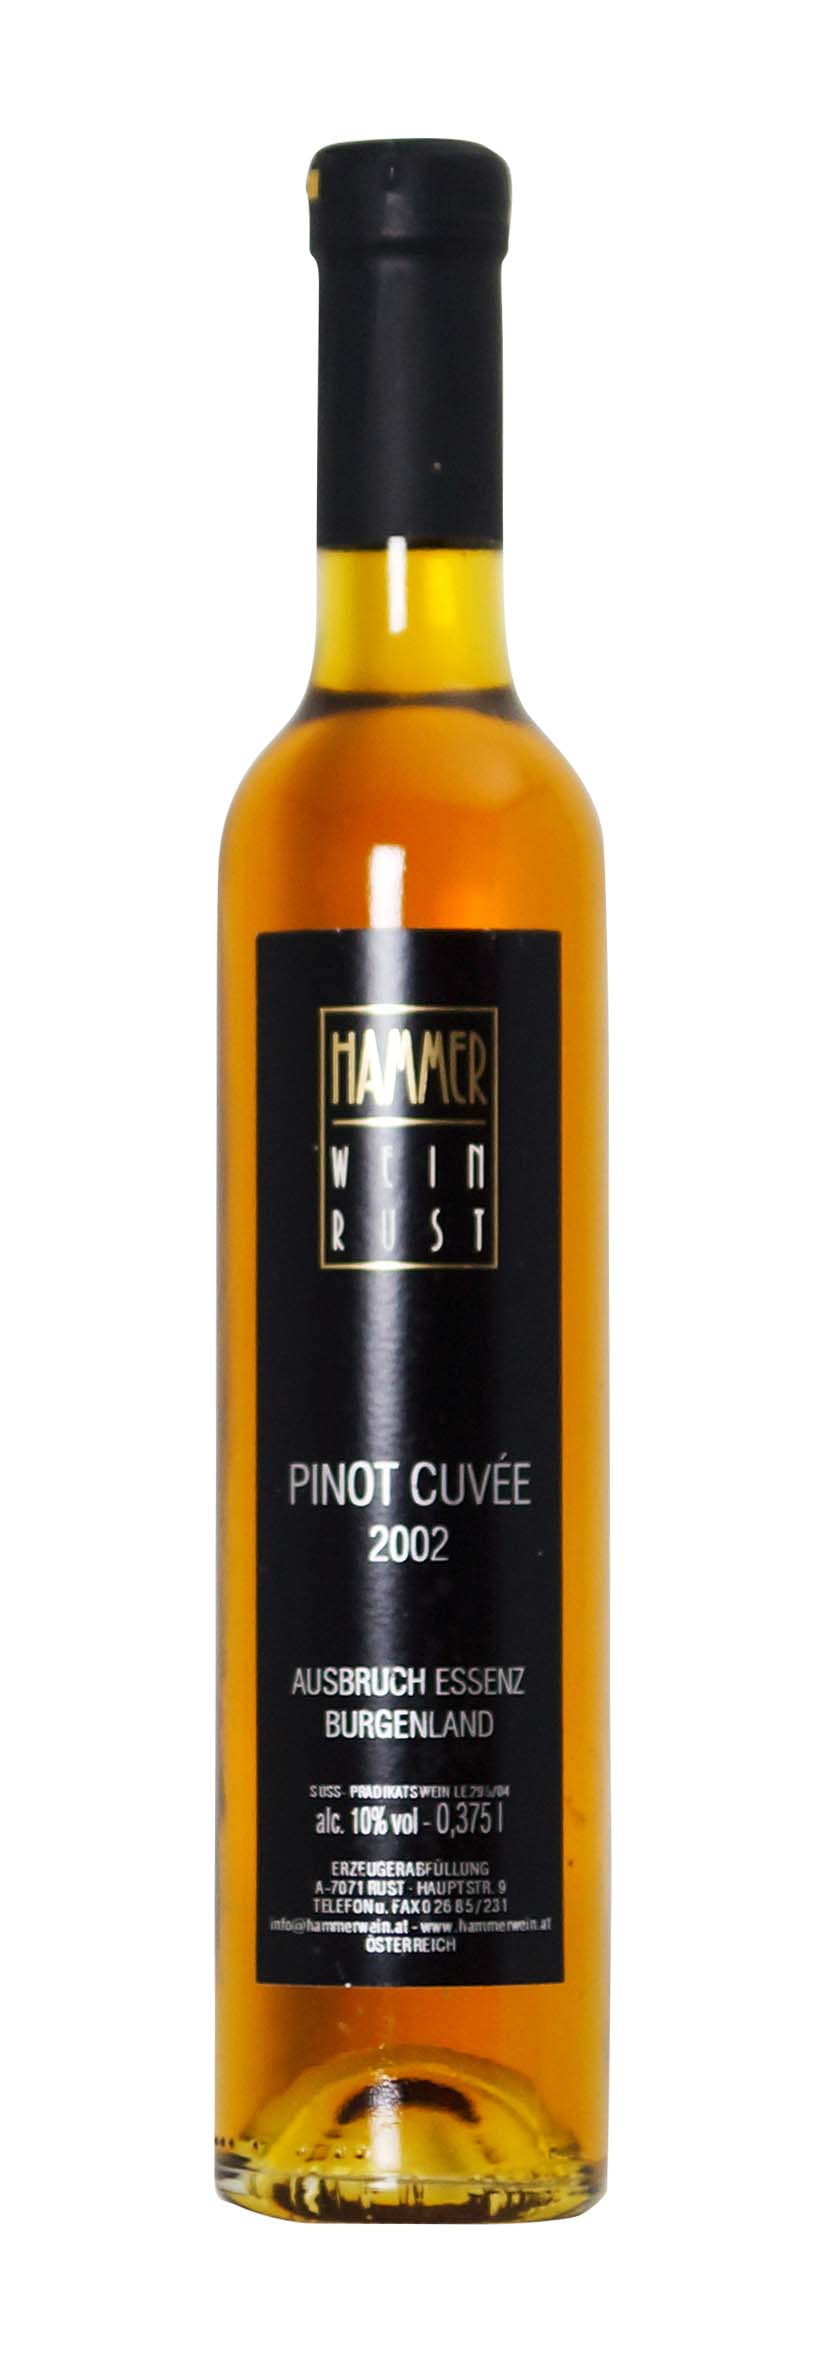 Pinot Cuvée Ausbruch Essenz 2002